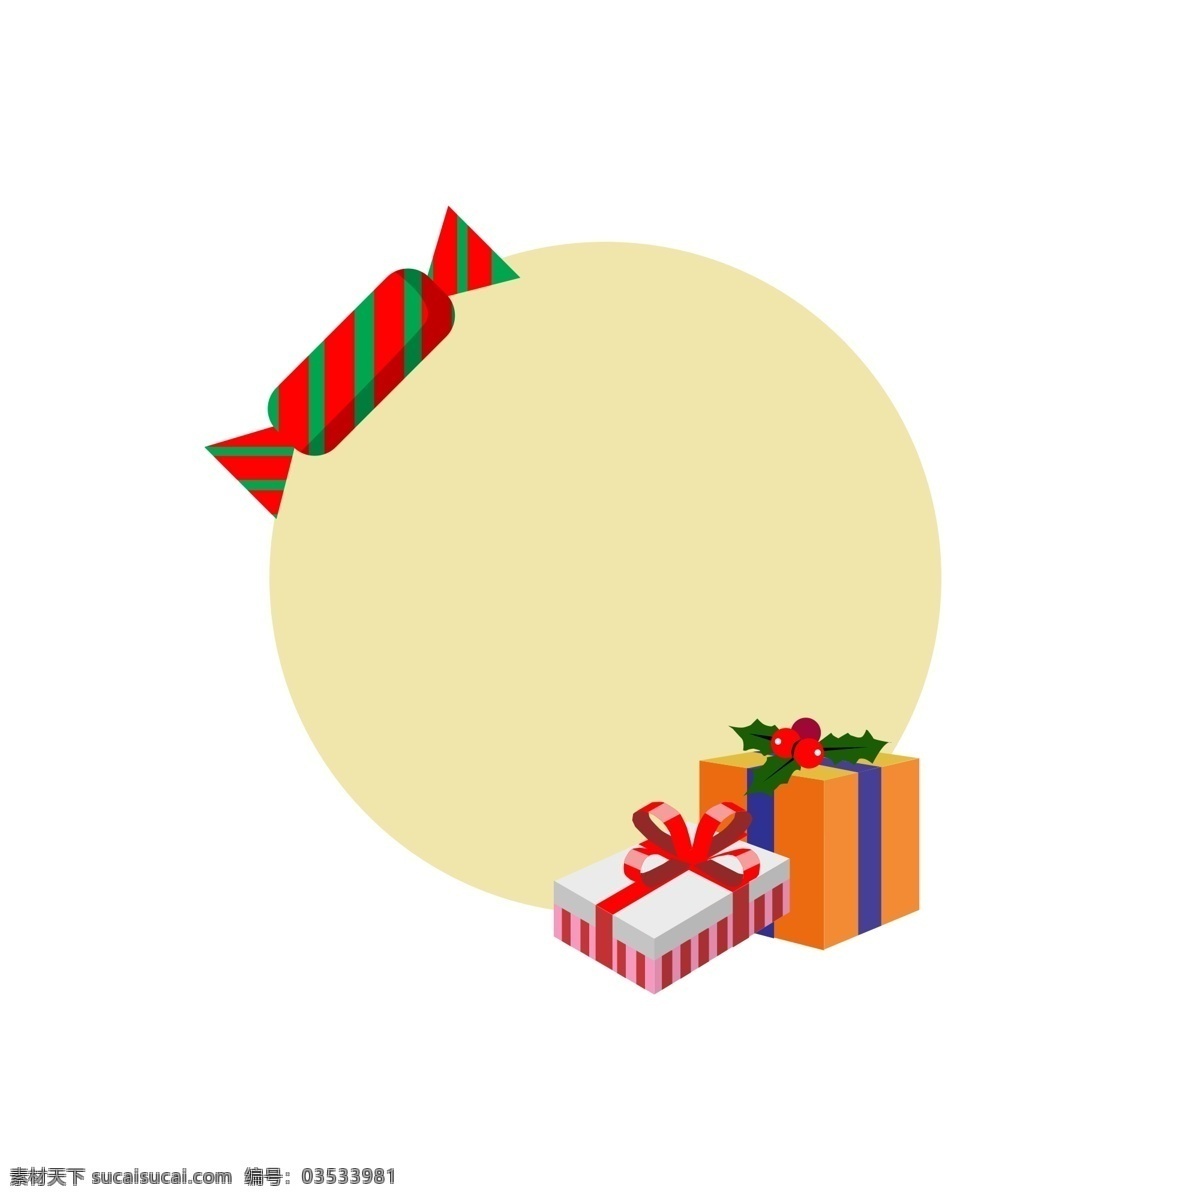 圣诞节 礼盒 边框 插画 圣诞节边框 唯美边框 创意边框 边框插画 红色的糖果 红色的蝴蝶结 黄色的礼盒